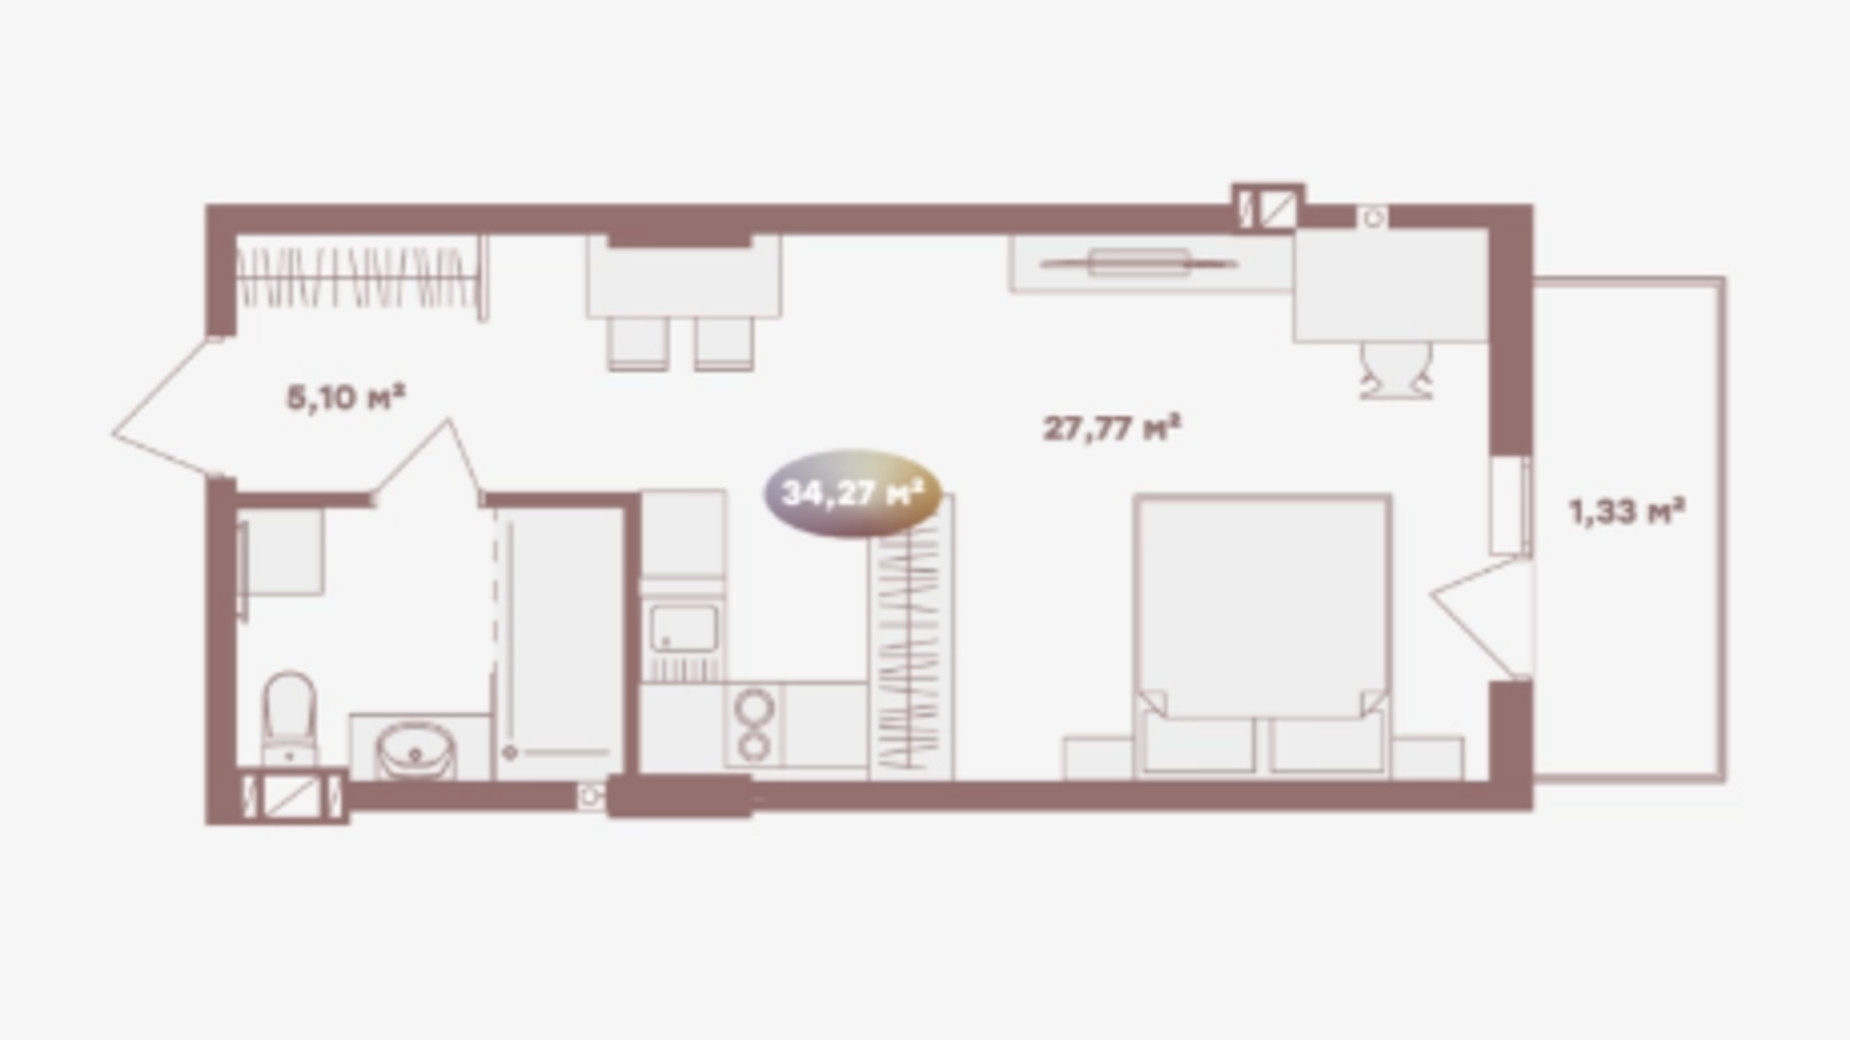 Планировка 1-комнатной квартиры в Апарт-готель Logos Home Apartment 34.27 м², фото 620688